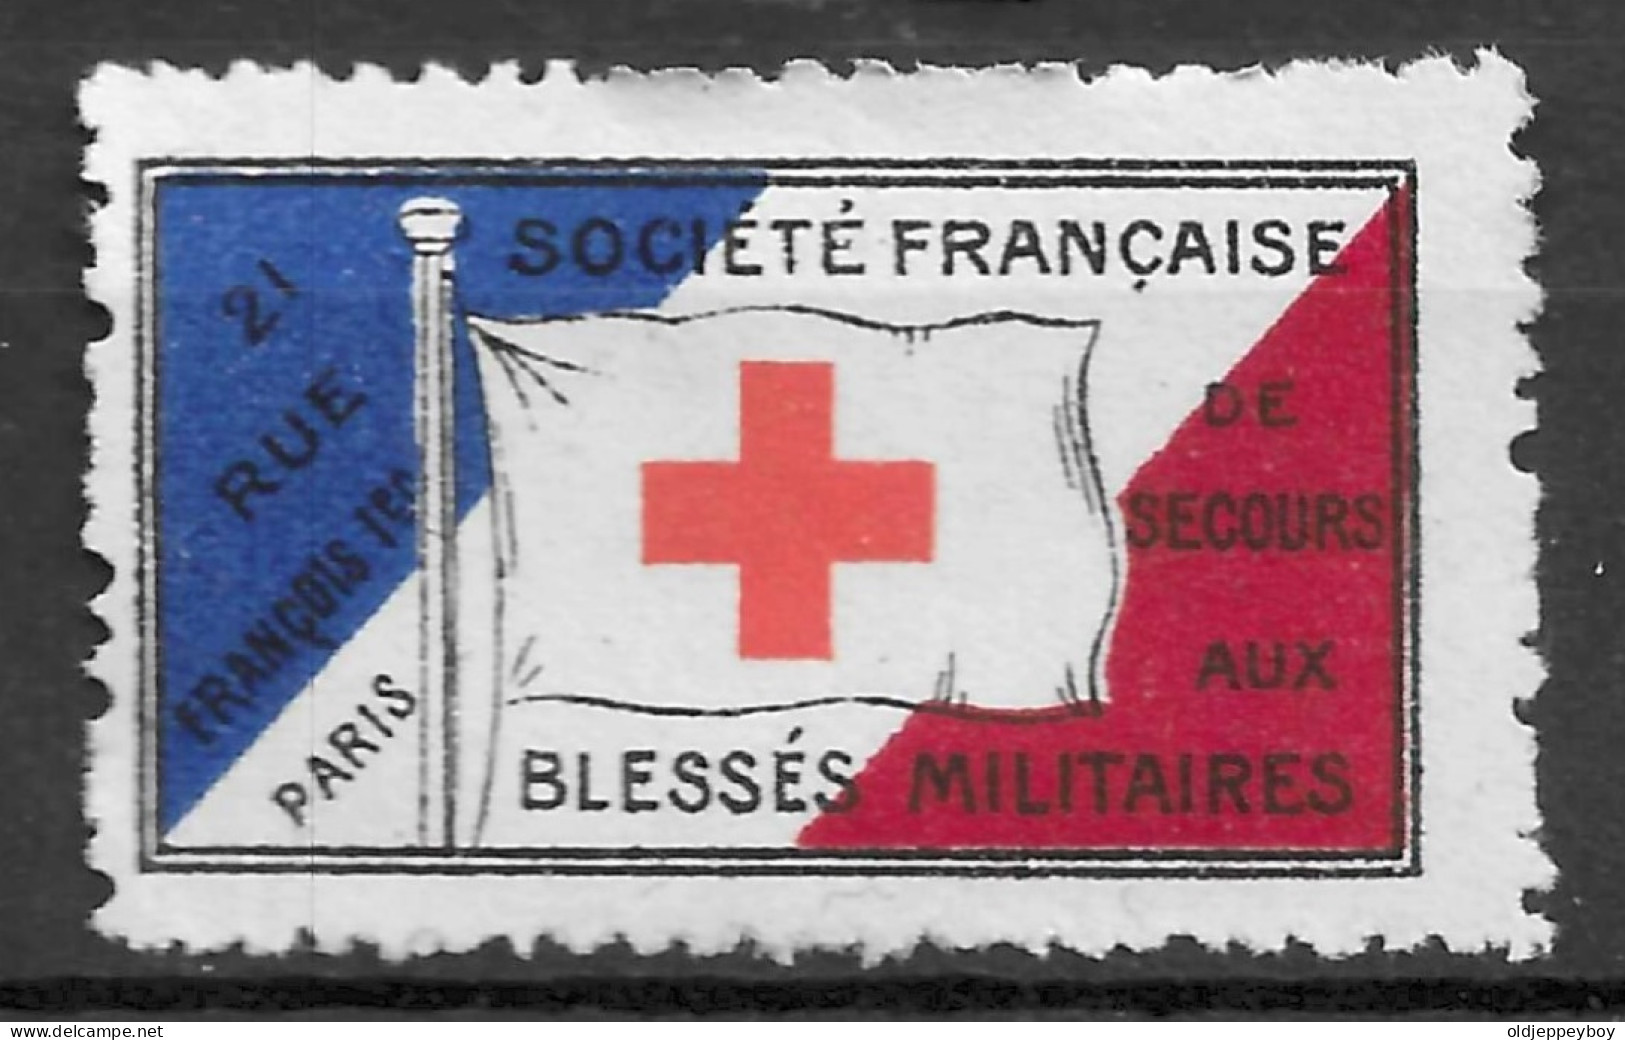 1914-1918 WW1 FRANCE Cinderella Vignette RED CROSS CROIX ROUGE SOCIETE FRANCAISE DE SECOURS AUX BLESSES MILITAIRES - Red Cross